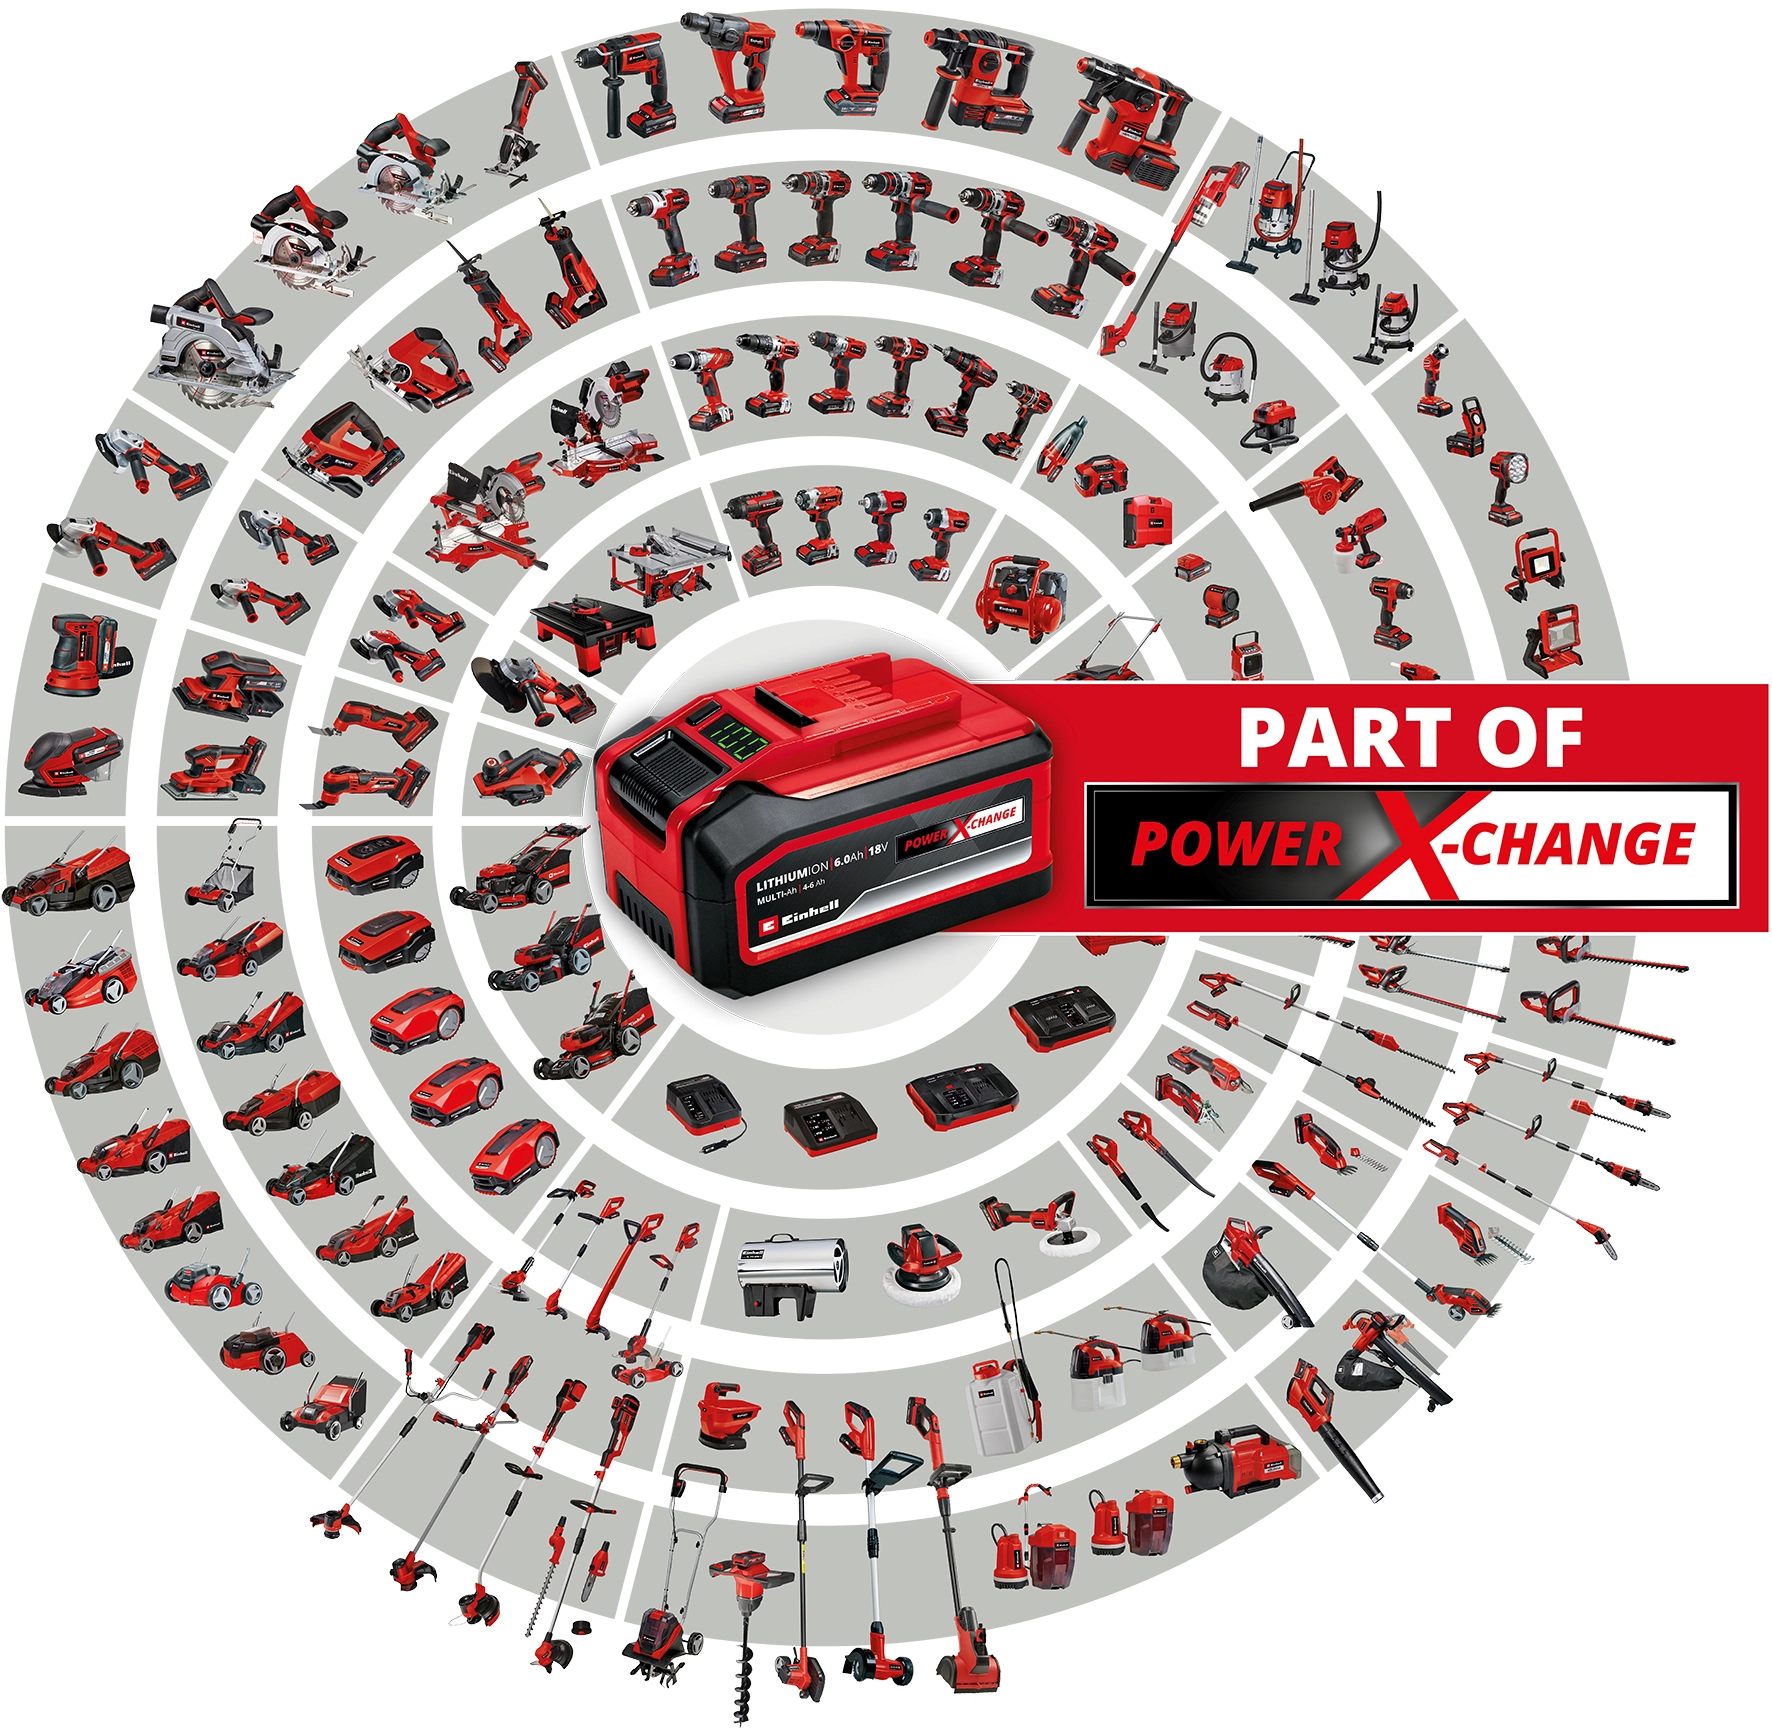 Einhell Power X-Change Akku-Autokompressor CE-CC 18 Li-Solo kaufen bei OBI